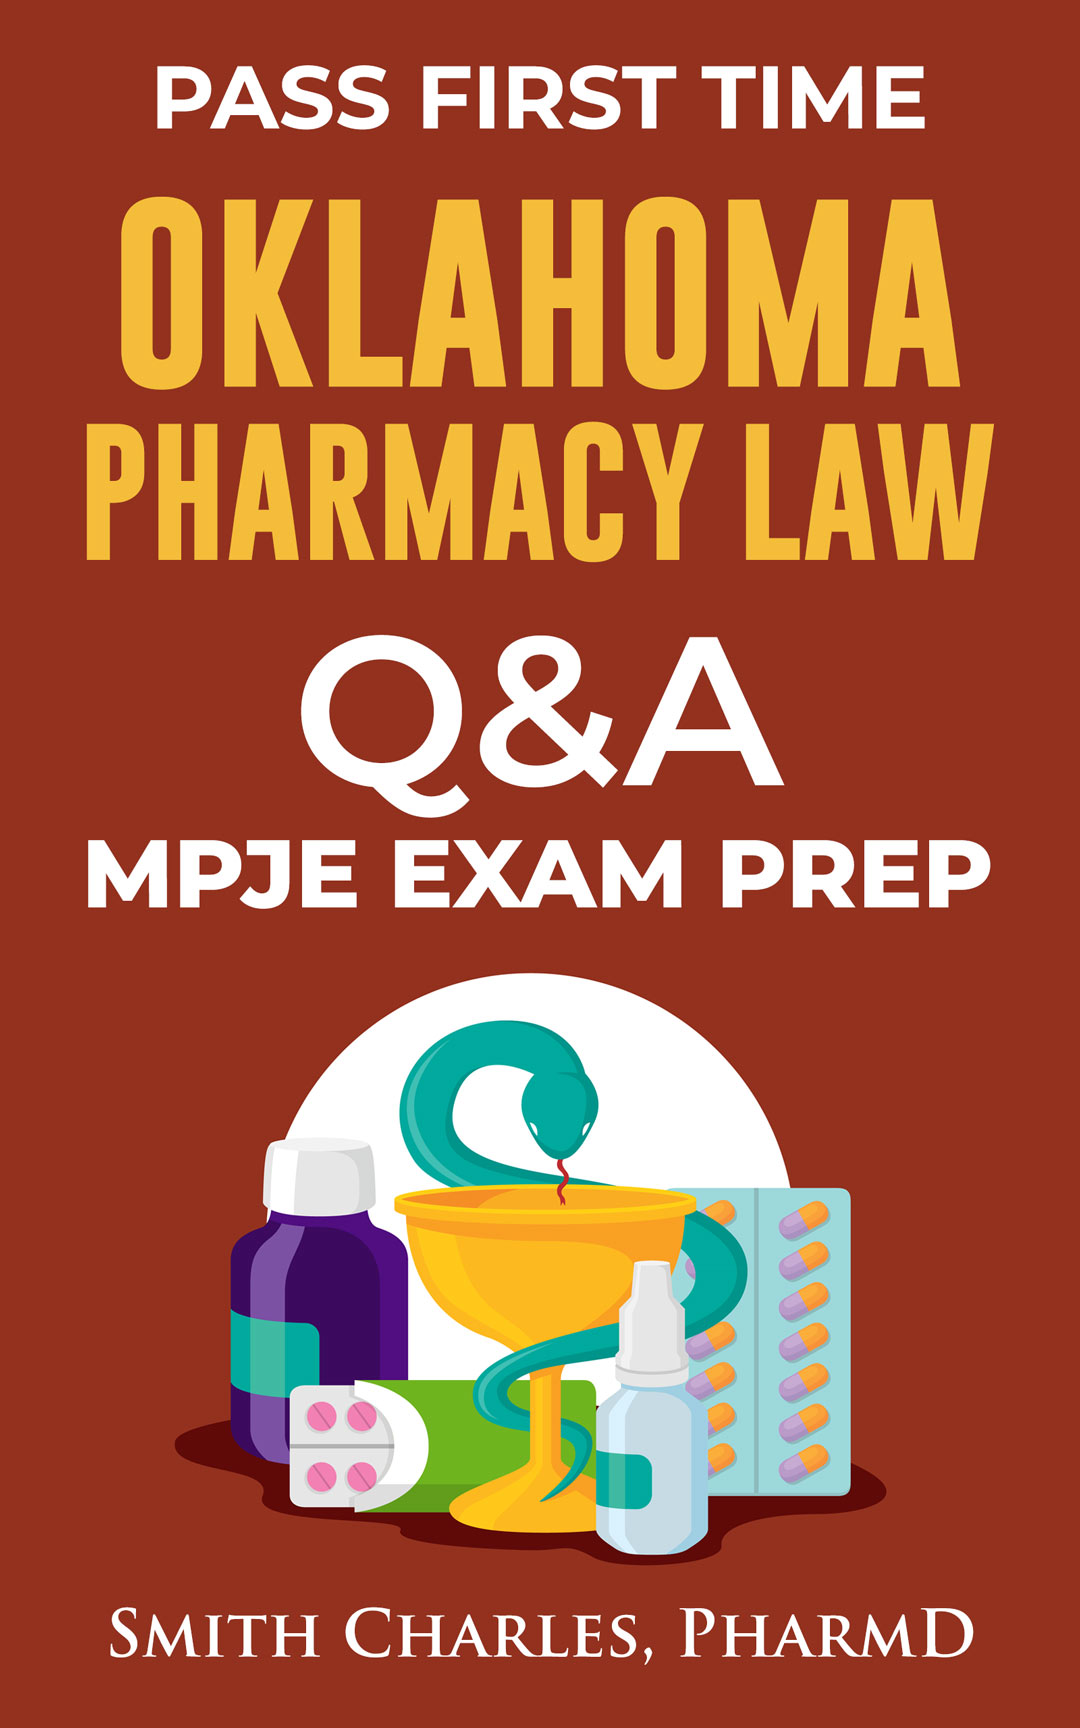 Oklahoma Pharmacy Law MPJE Exam Prep Q & A